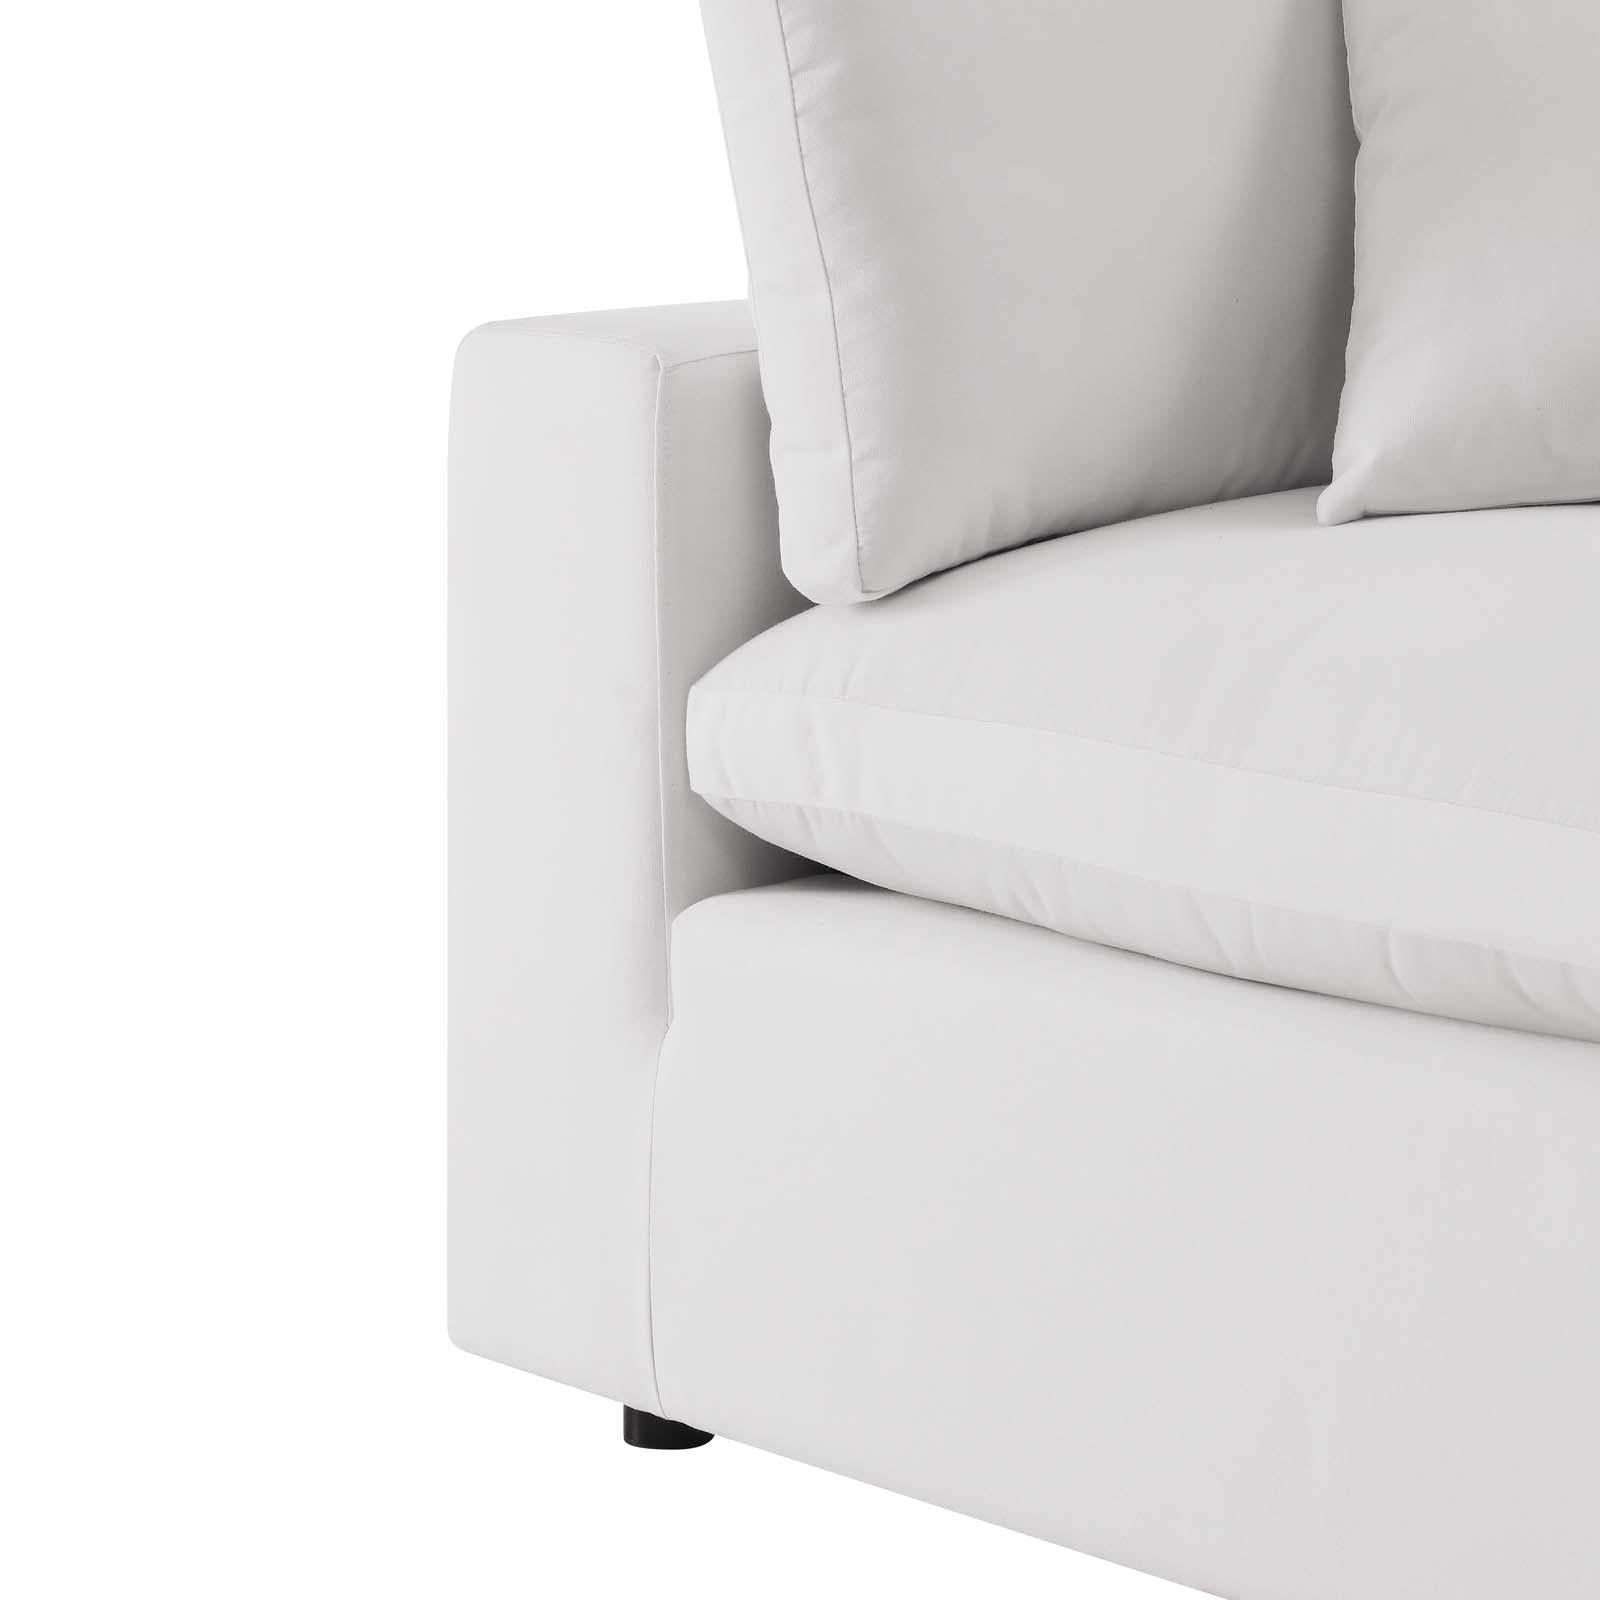 Modway Furniture Modern Commix Overstuffed Outdoor Patio Loveseat - EEI-5576